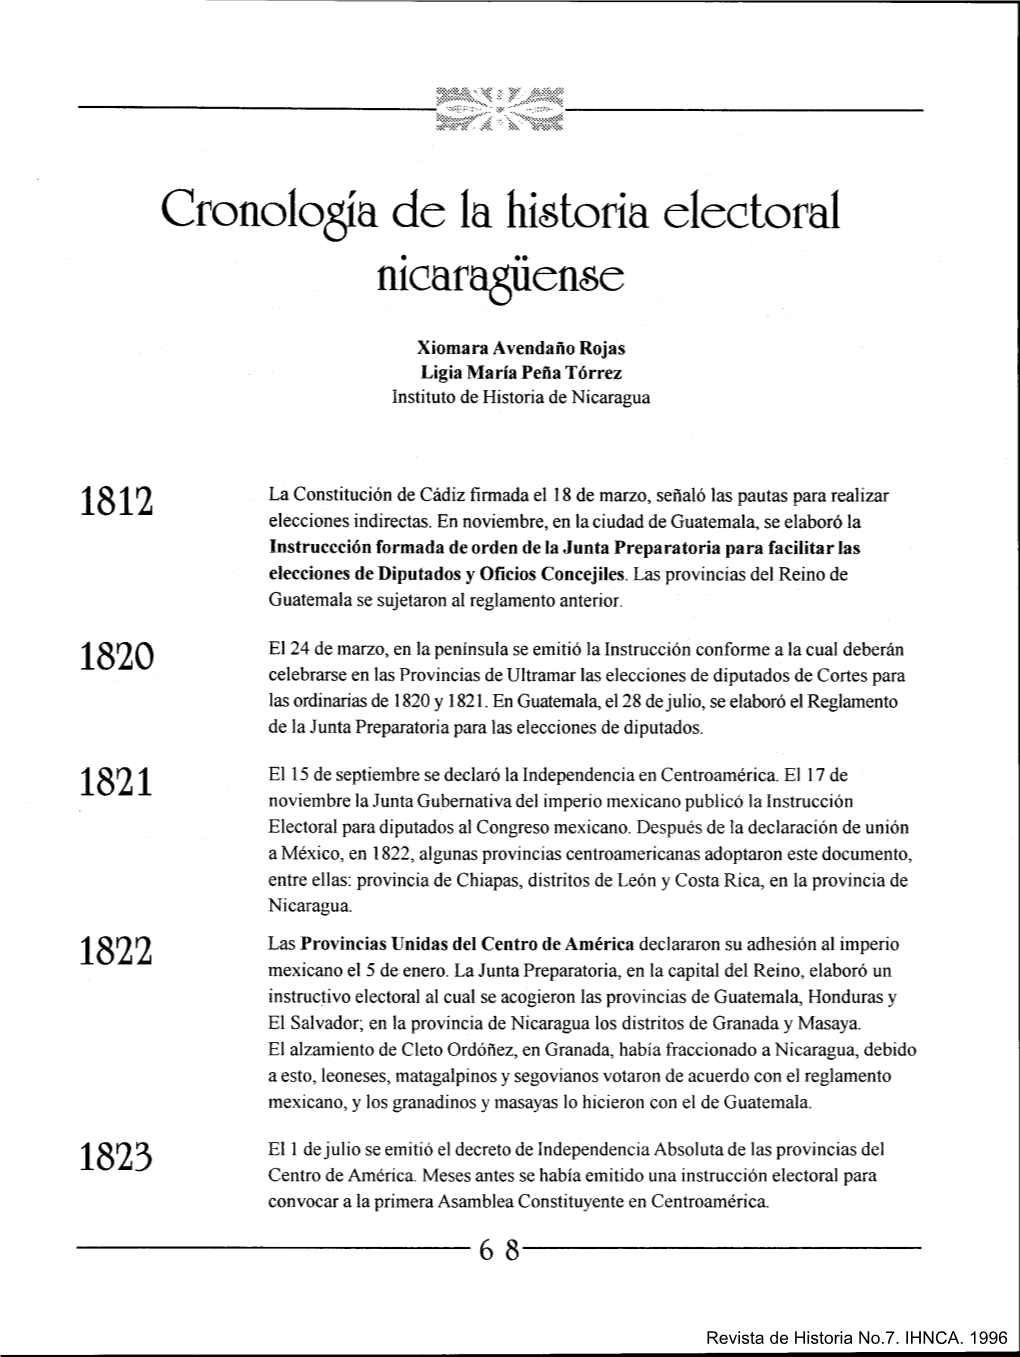 Cronología De Fa Historia Electoral Nfcafaquense L